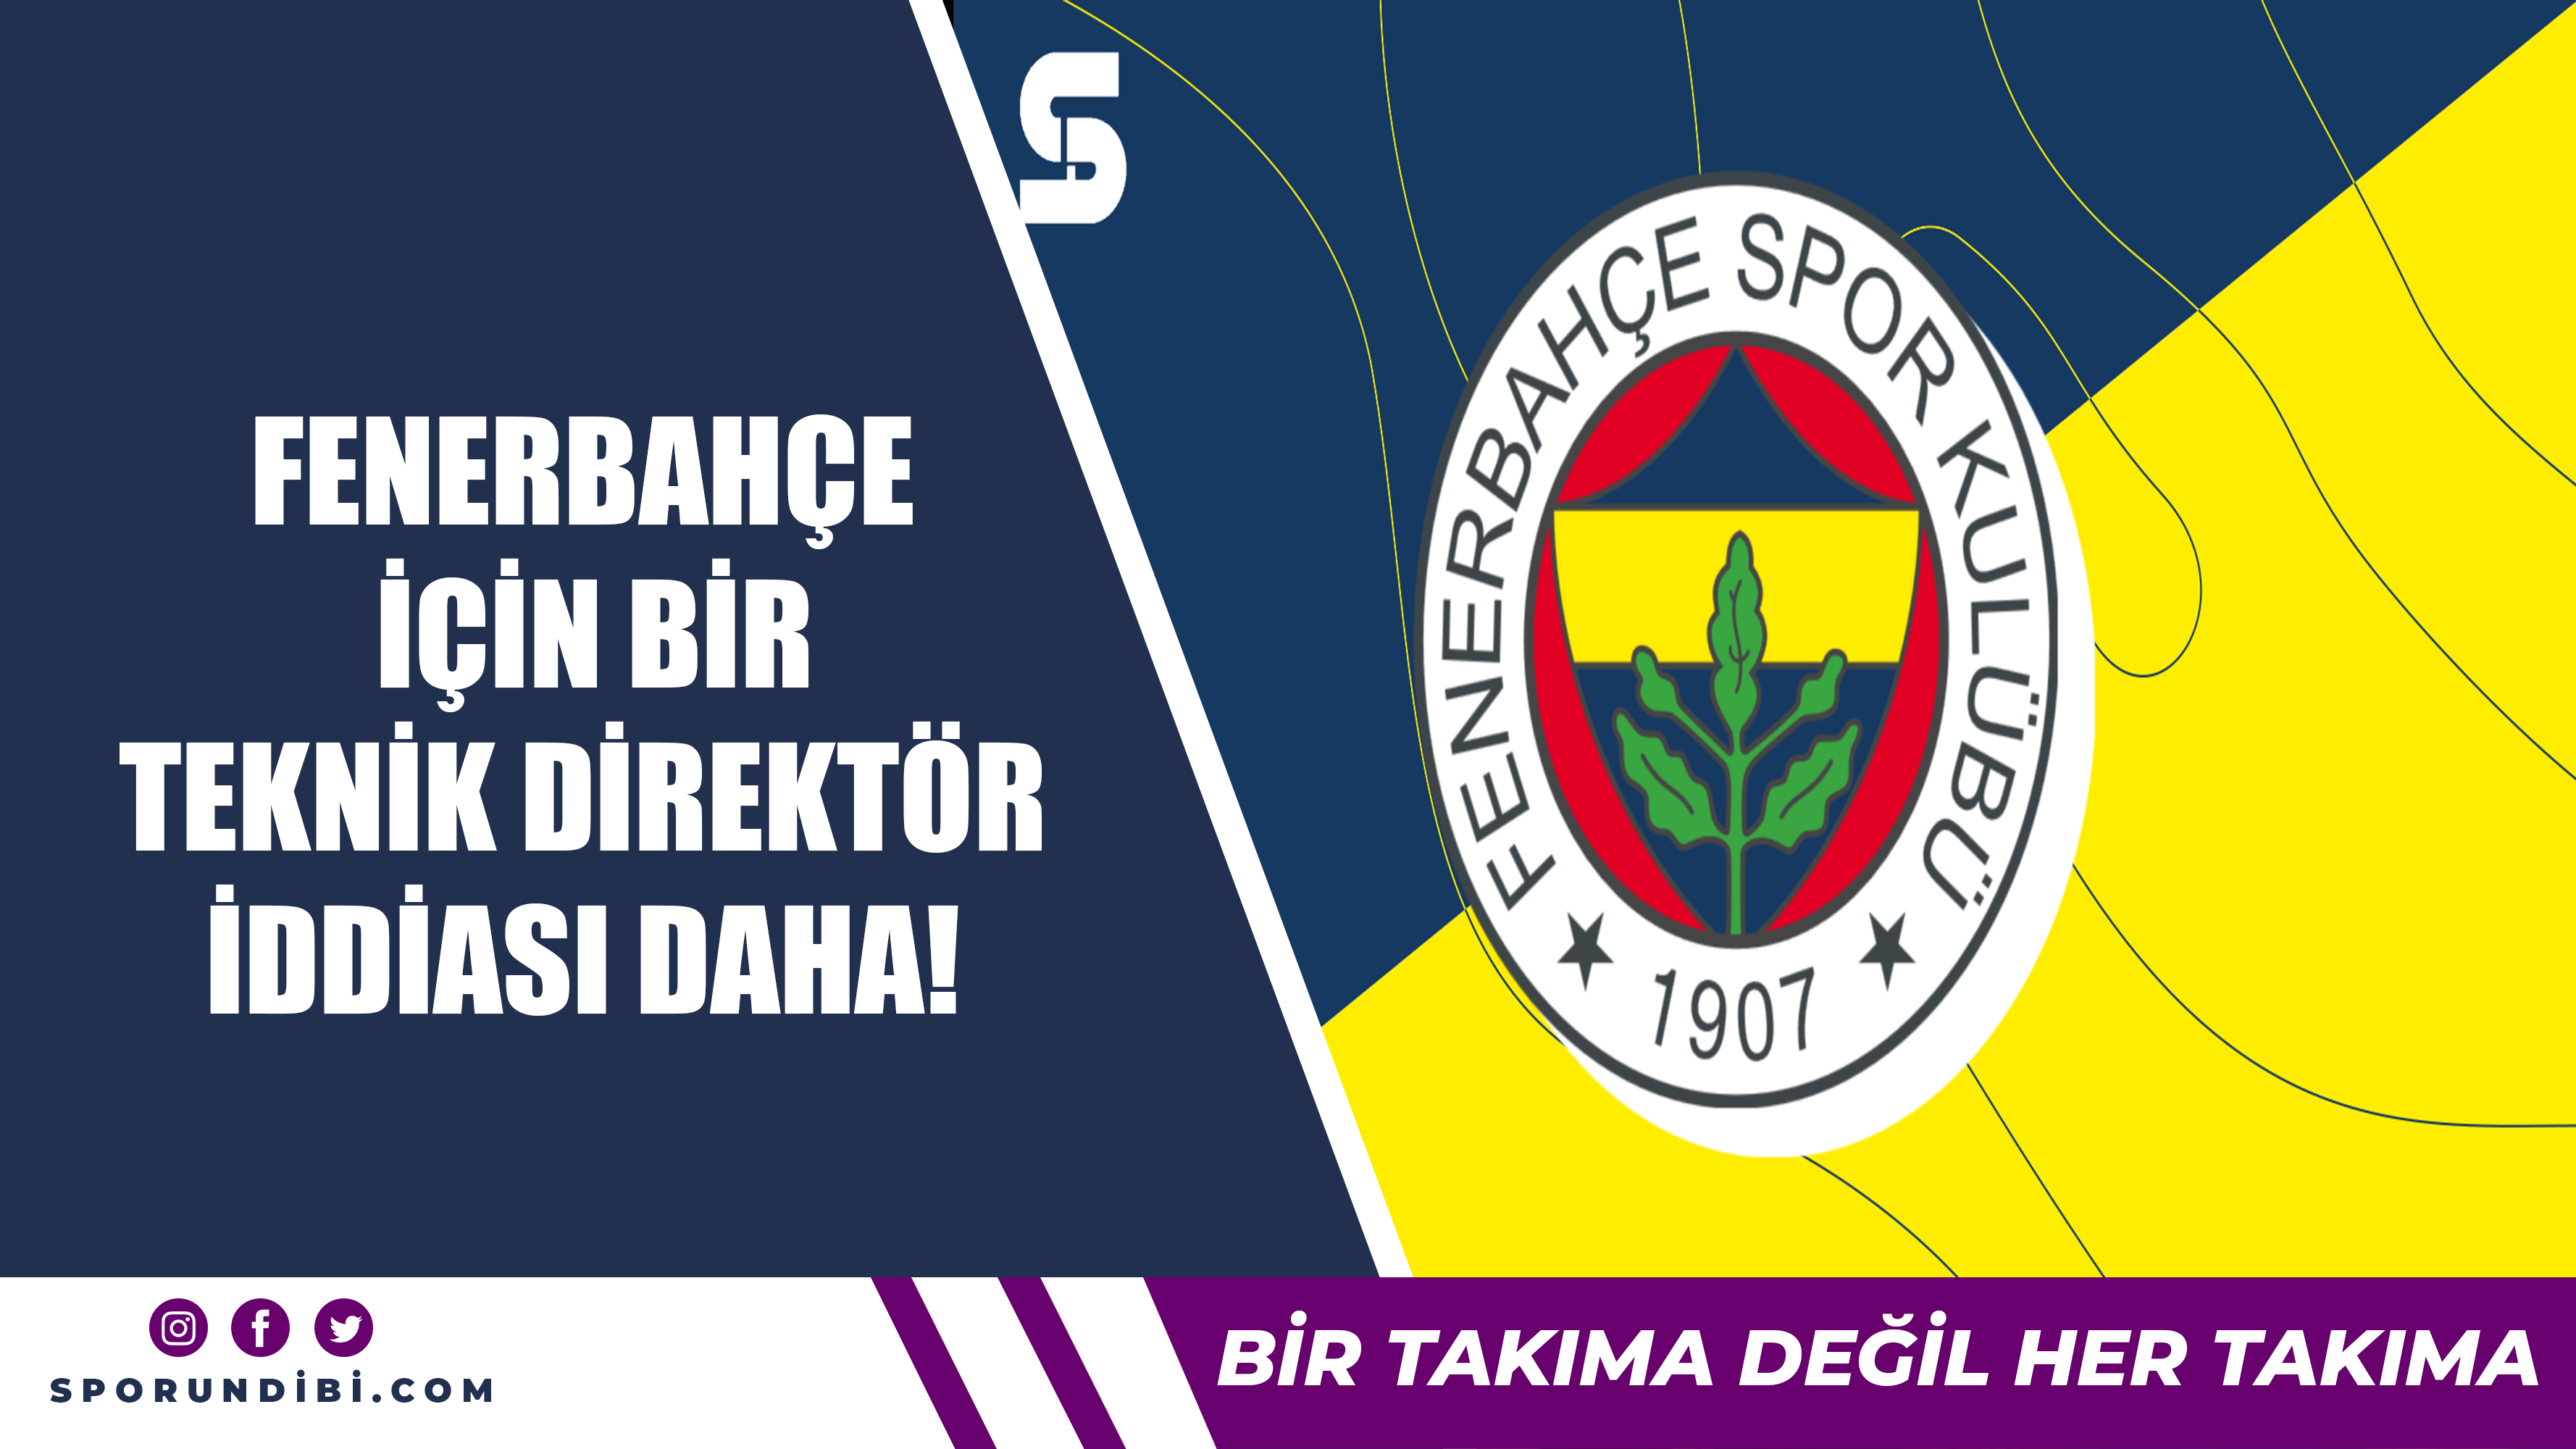 Fenerbahçe için bir teknik direktör iddiası daha!